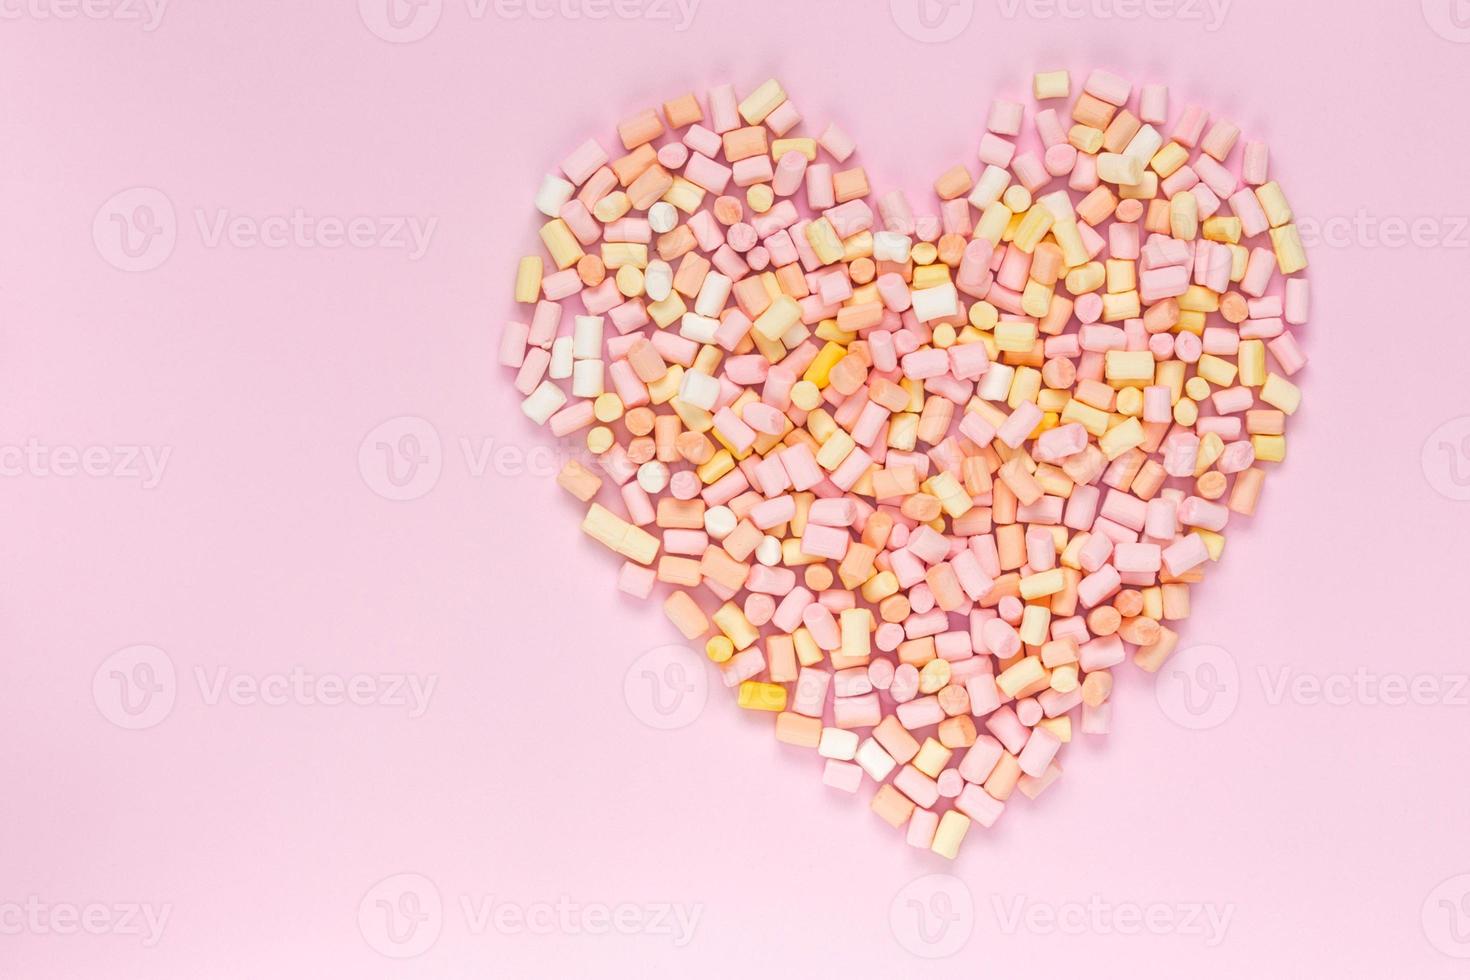 Vue de dessus des guimauves multicolores qui se trouve en forme de coeur sur un fond rose monochrome photo